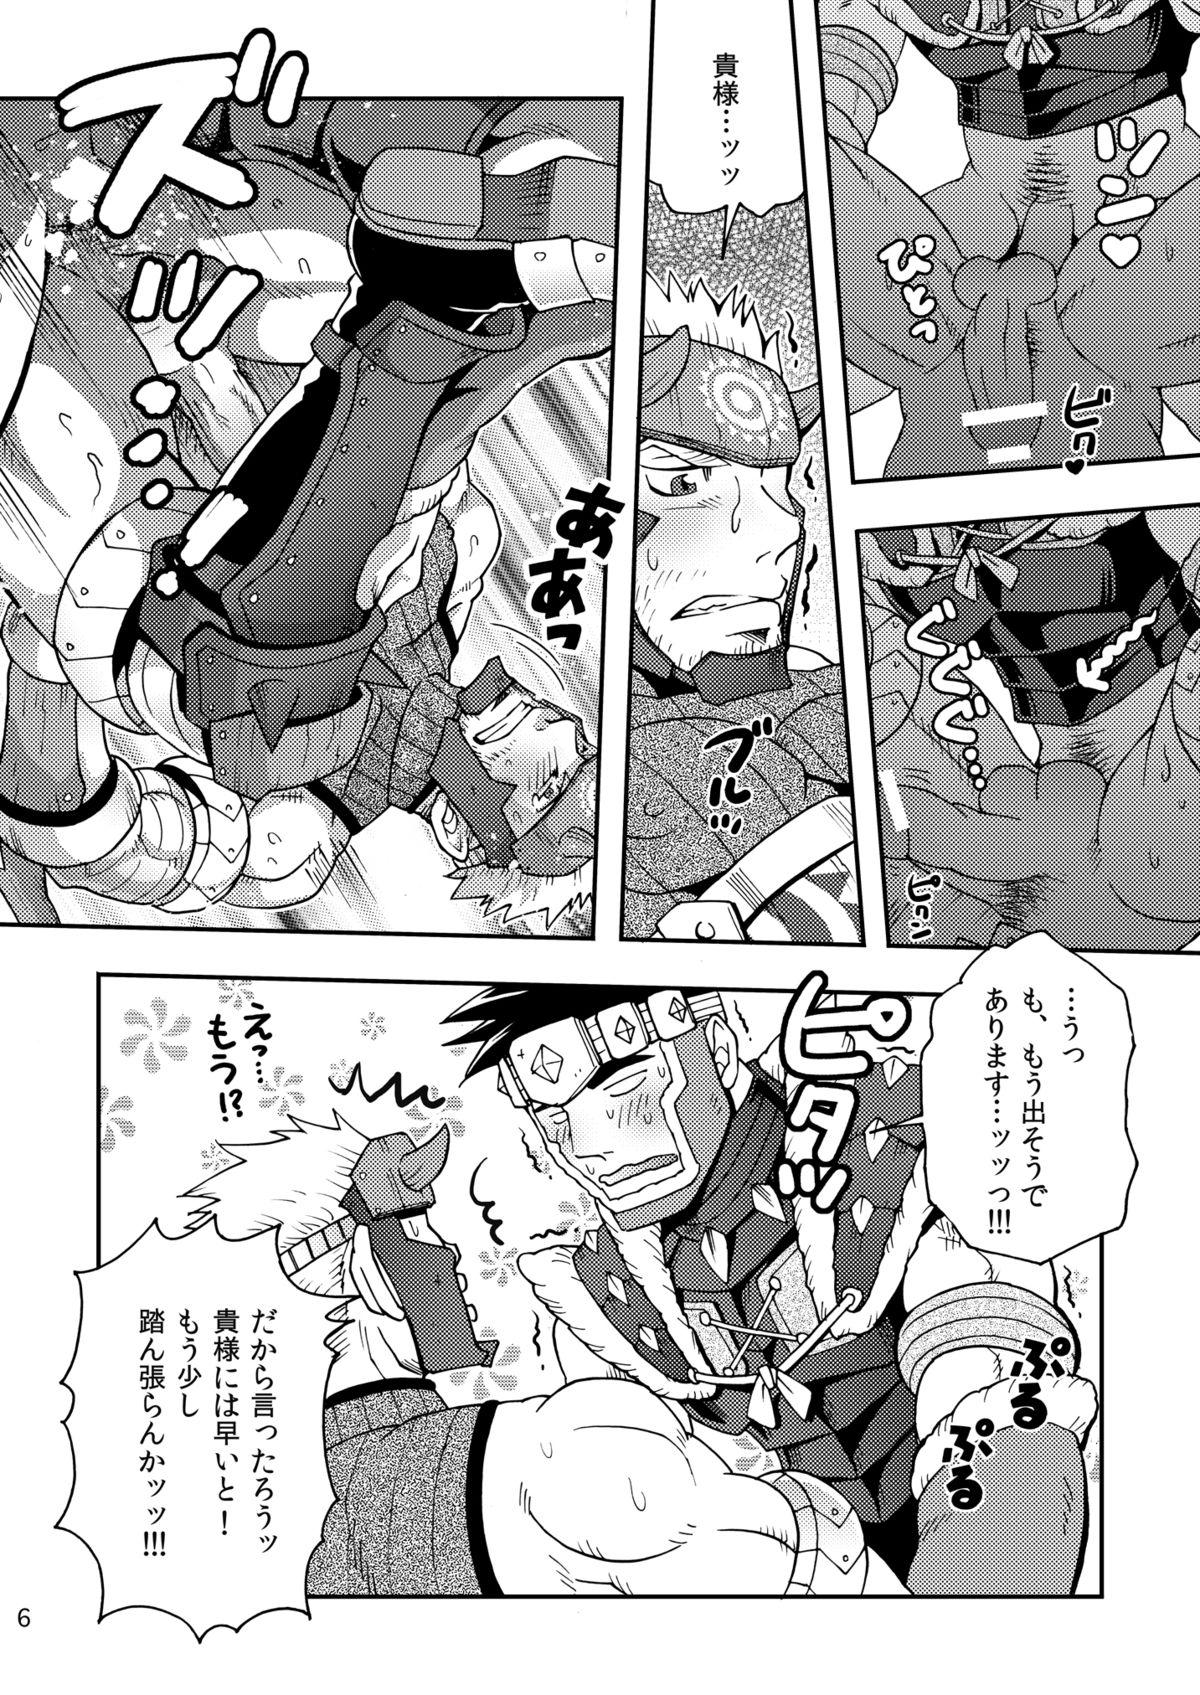 Nerd Wagahai no Nitro Dake ga Bakuhatsushi Souna noda! - Monster hunter Glory Hole - Page 5